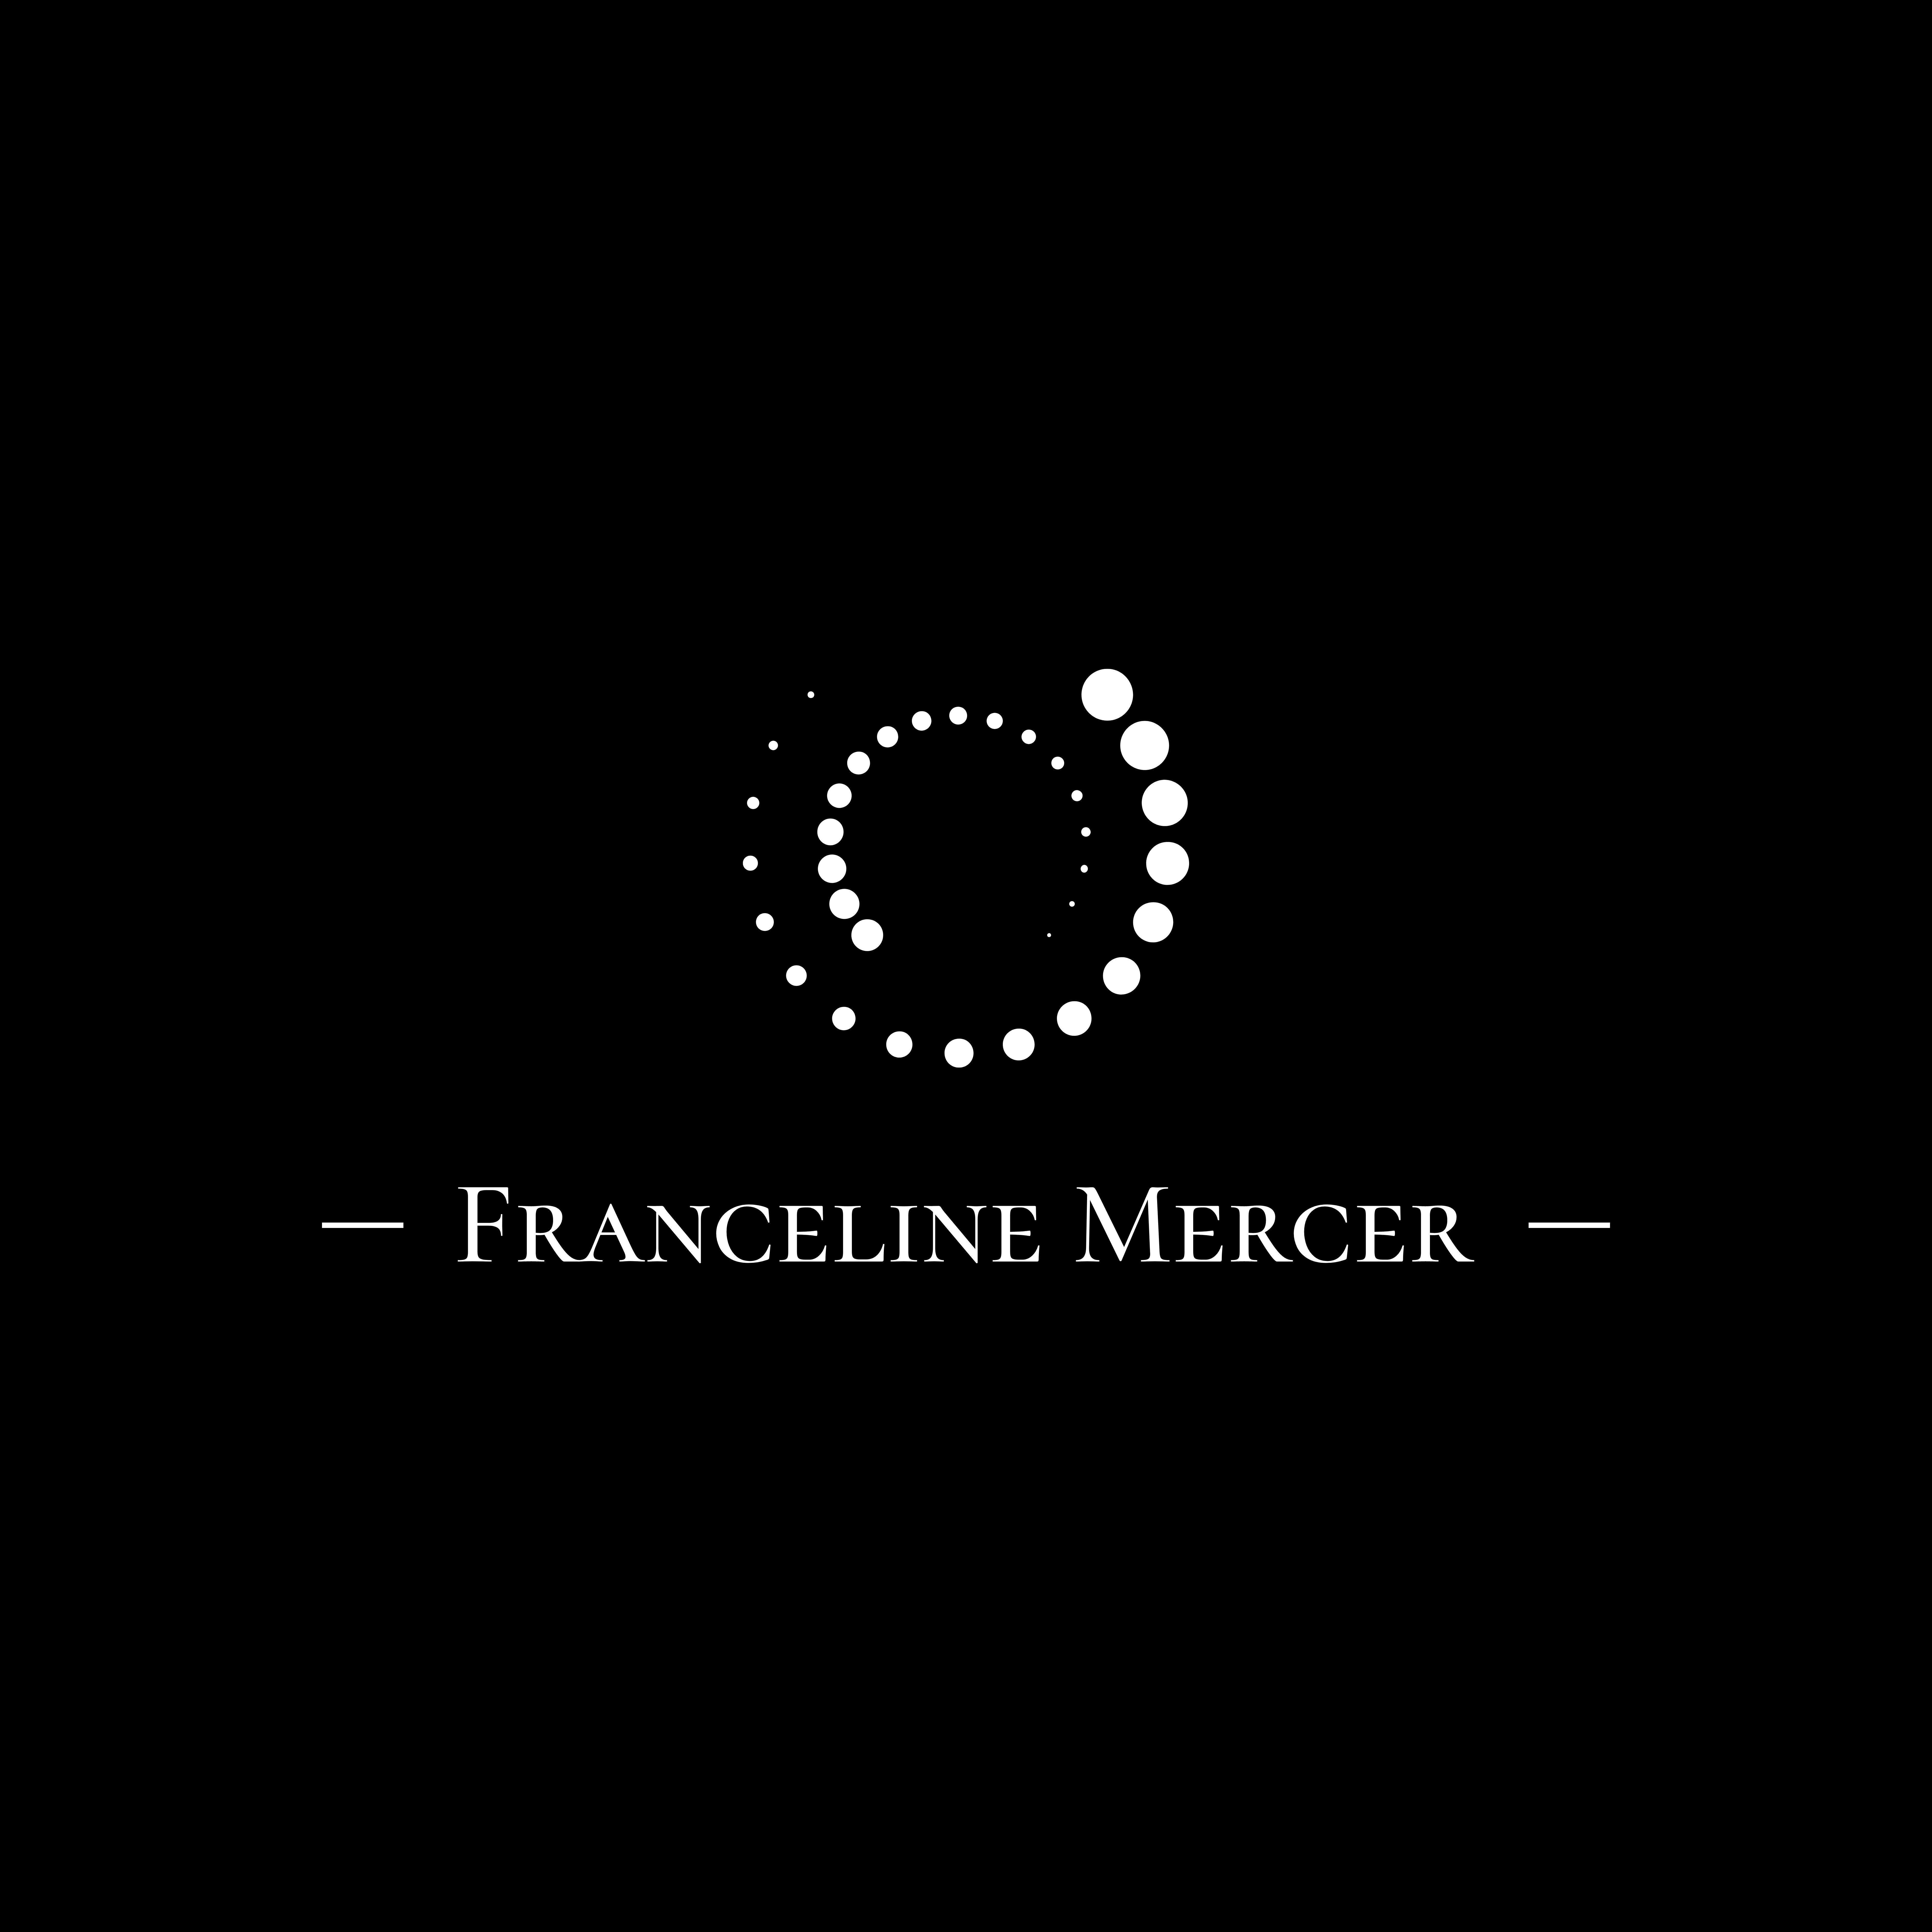 Franceline Mercer